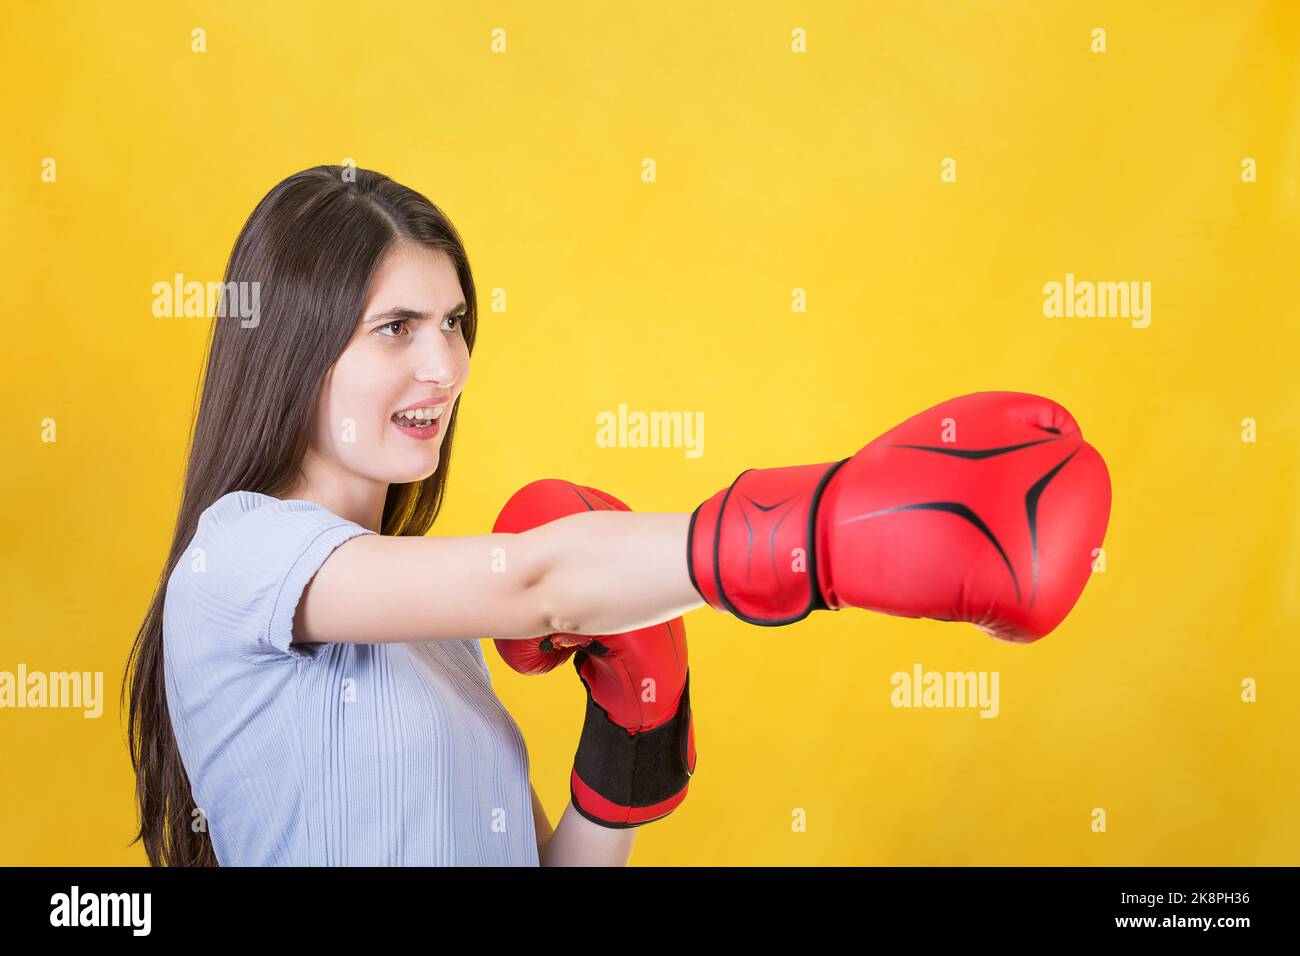 Wütende junge Frau mit roten Boxhandschuhen steht in Kampfposition und sticht mit der Hand. Portrait eines starken und entschlossenen Mädchens, das sich auf den Kampf i vorbereitet hat Stockfoto